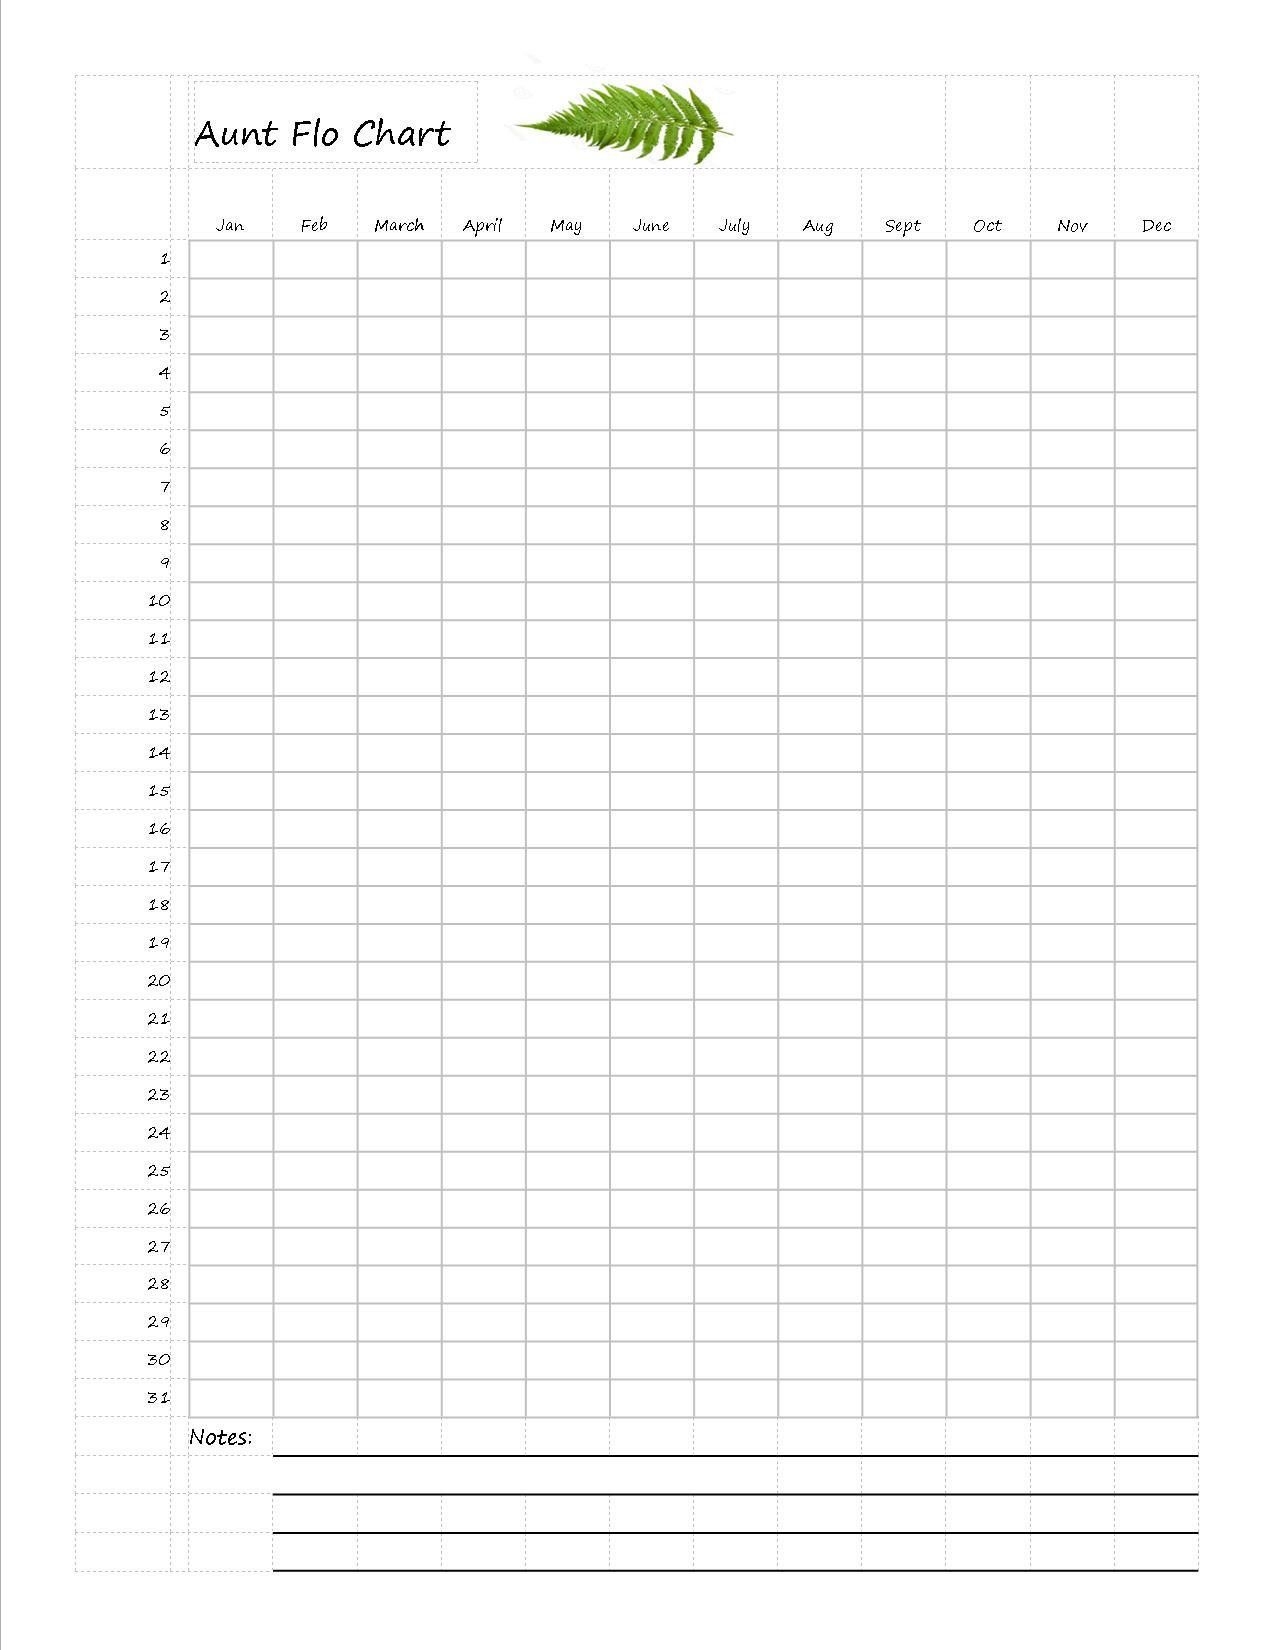 Universal Menstrual Chart Printable Free Get Your Calendar Printable